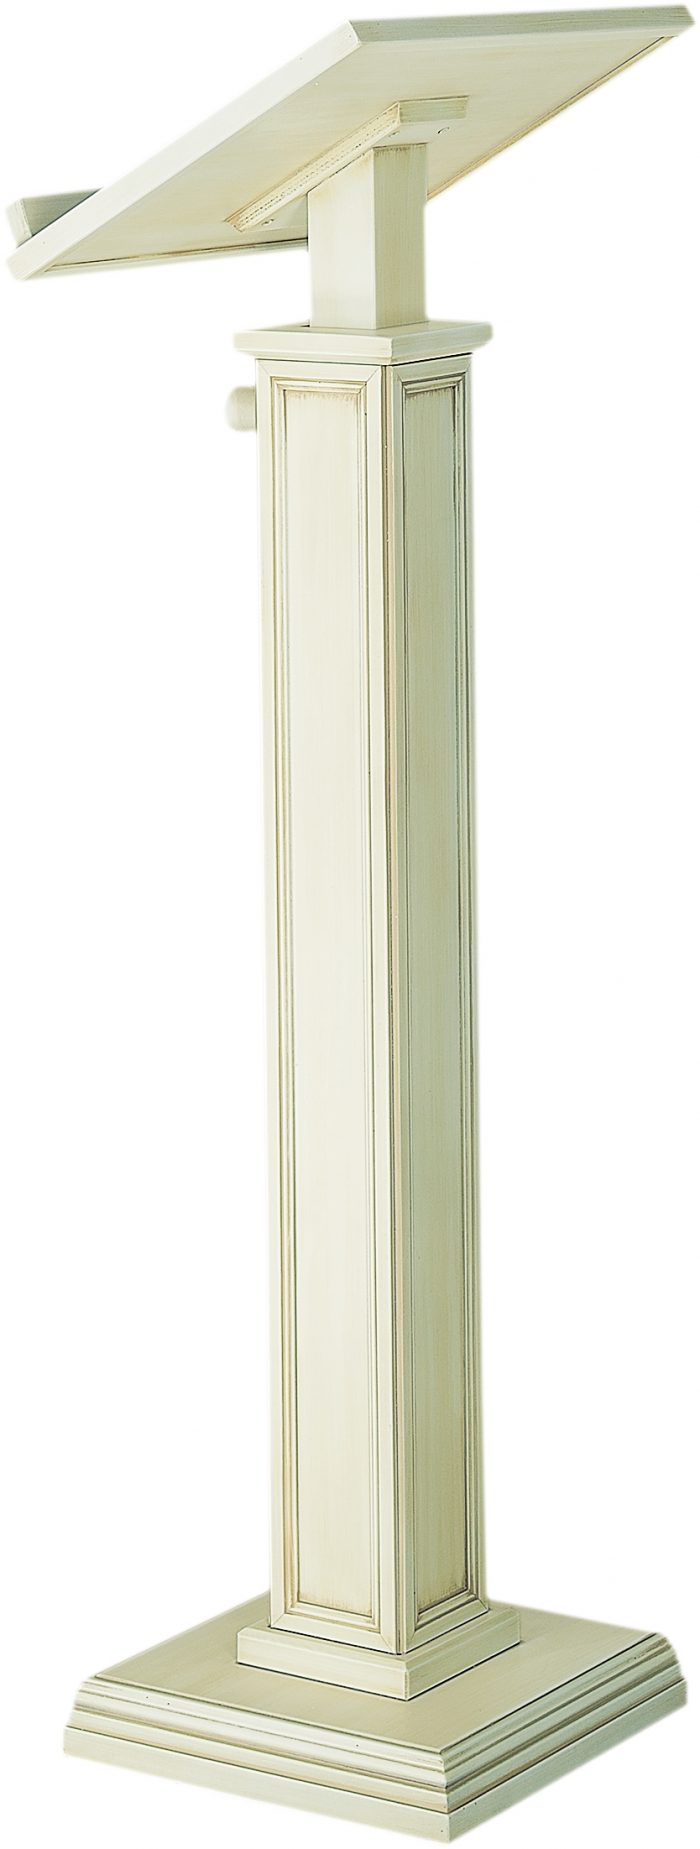 Leggio a stelo bianco in legno massello con base e stelo a sezione quadrata, decorato con modanature